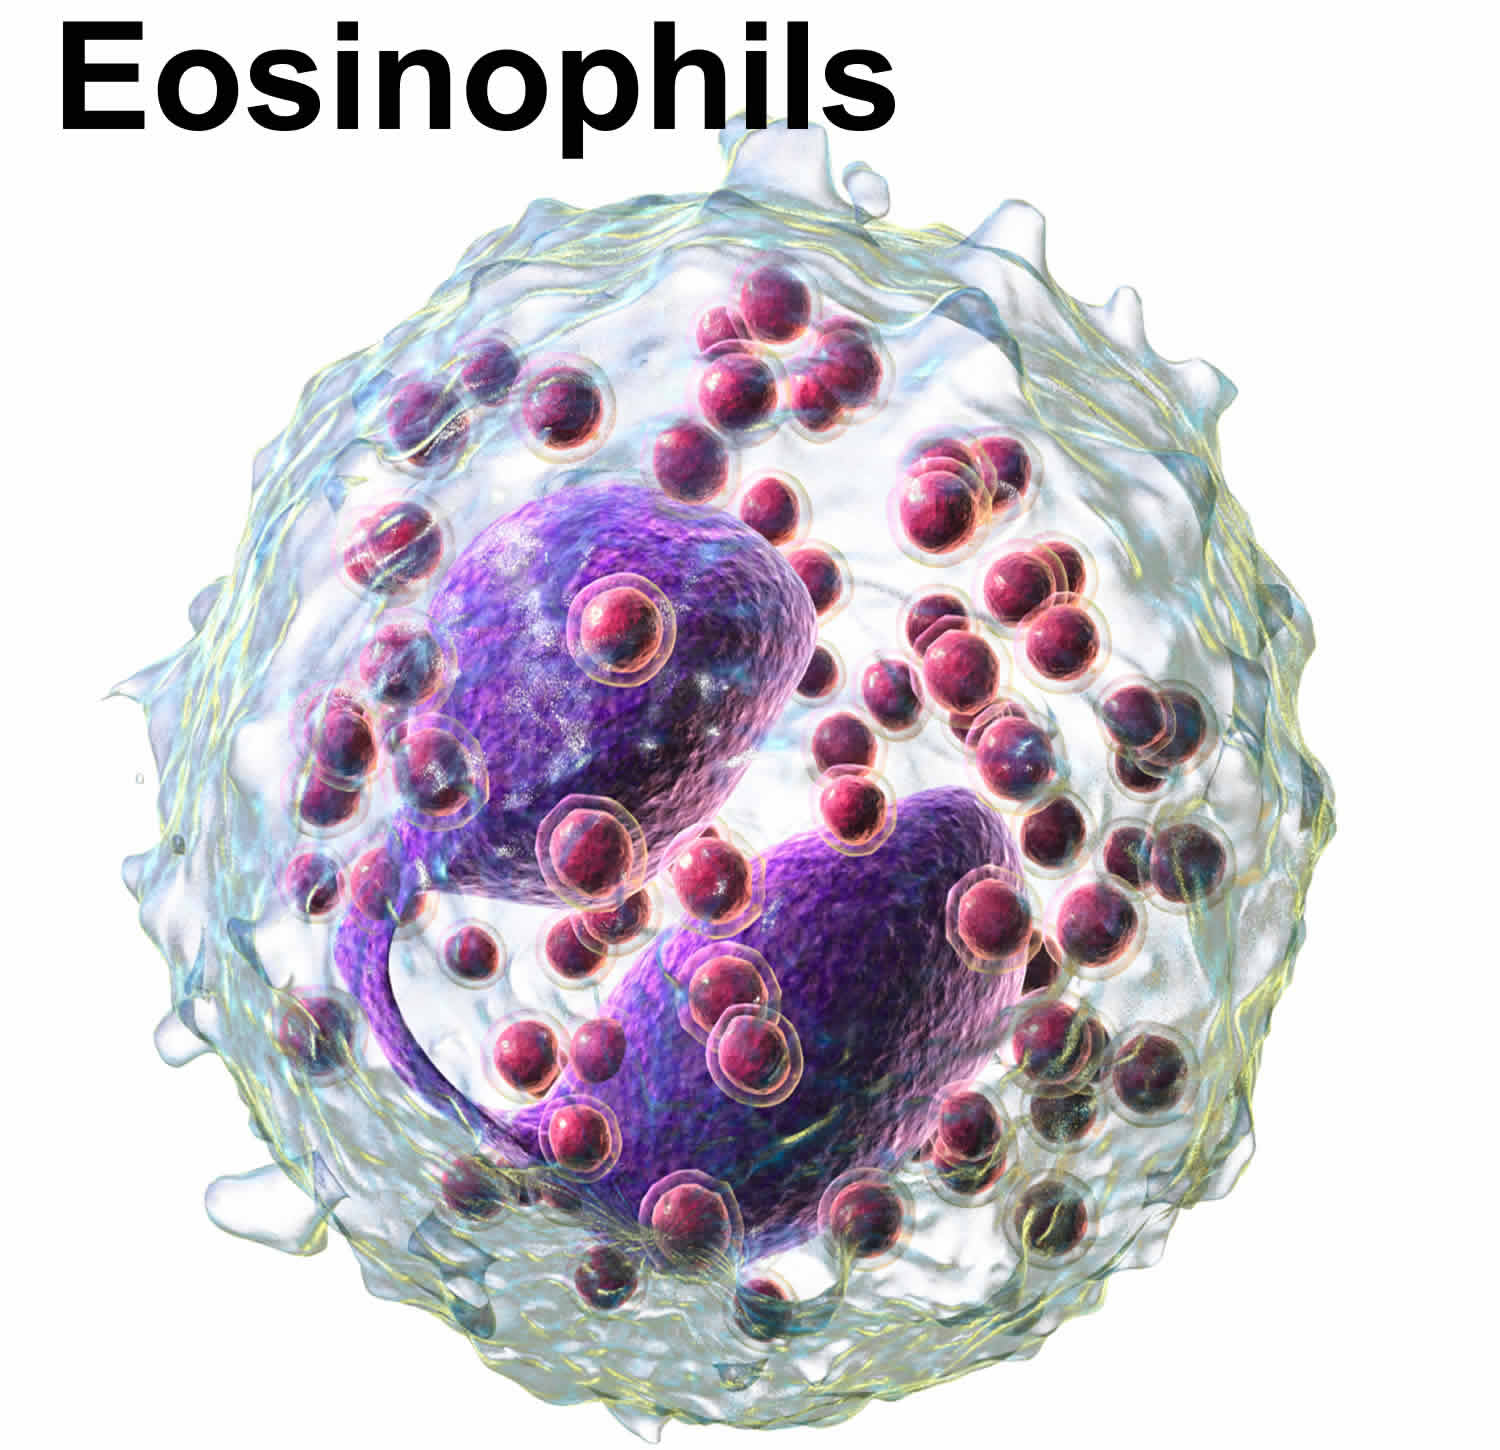 eosinophils